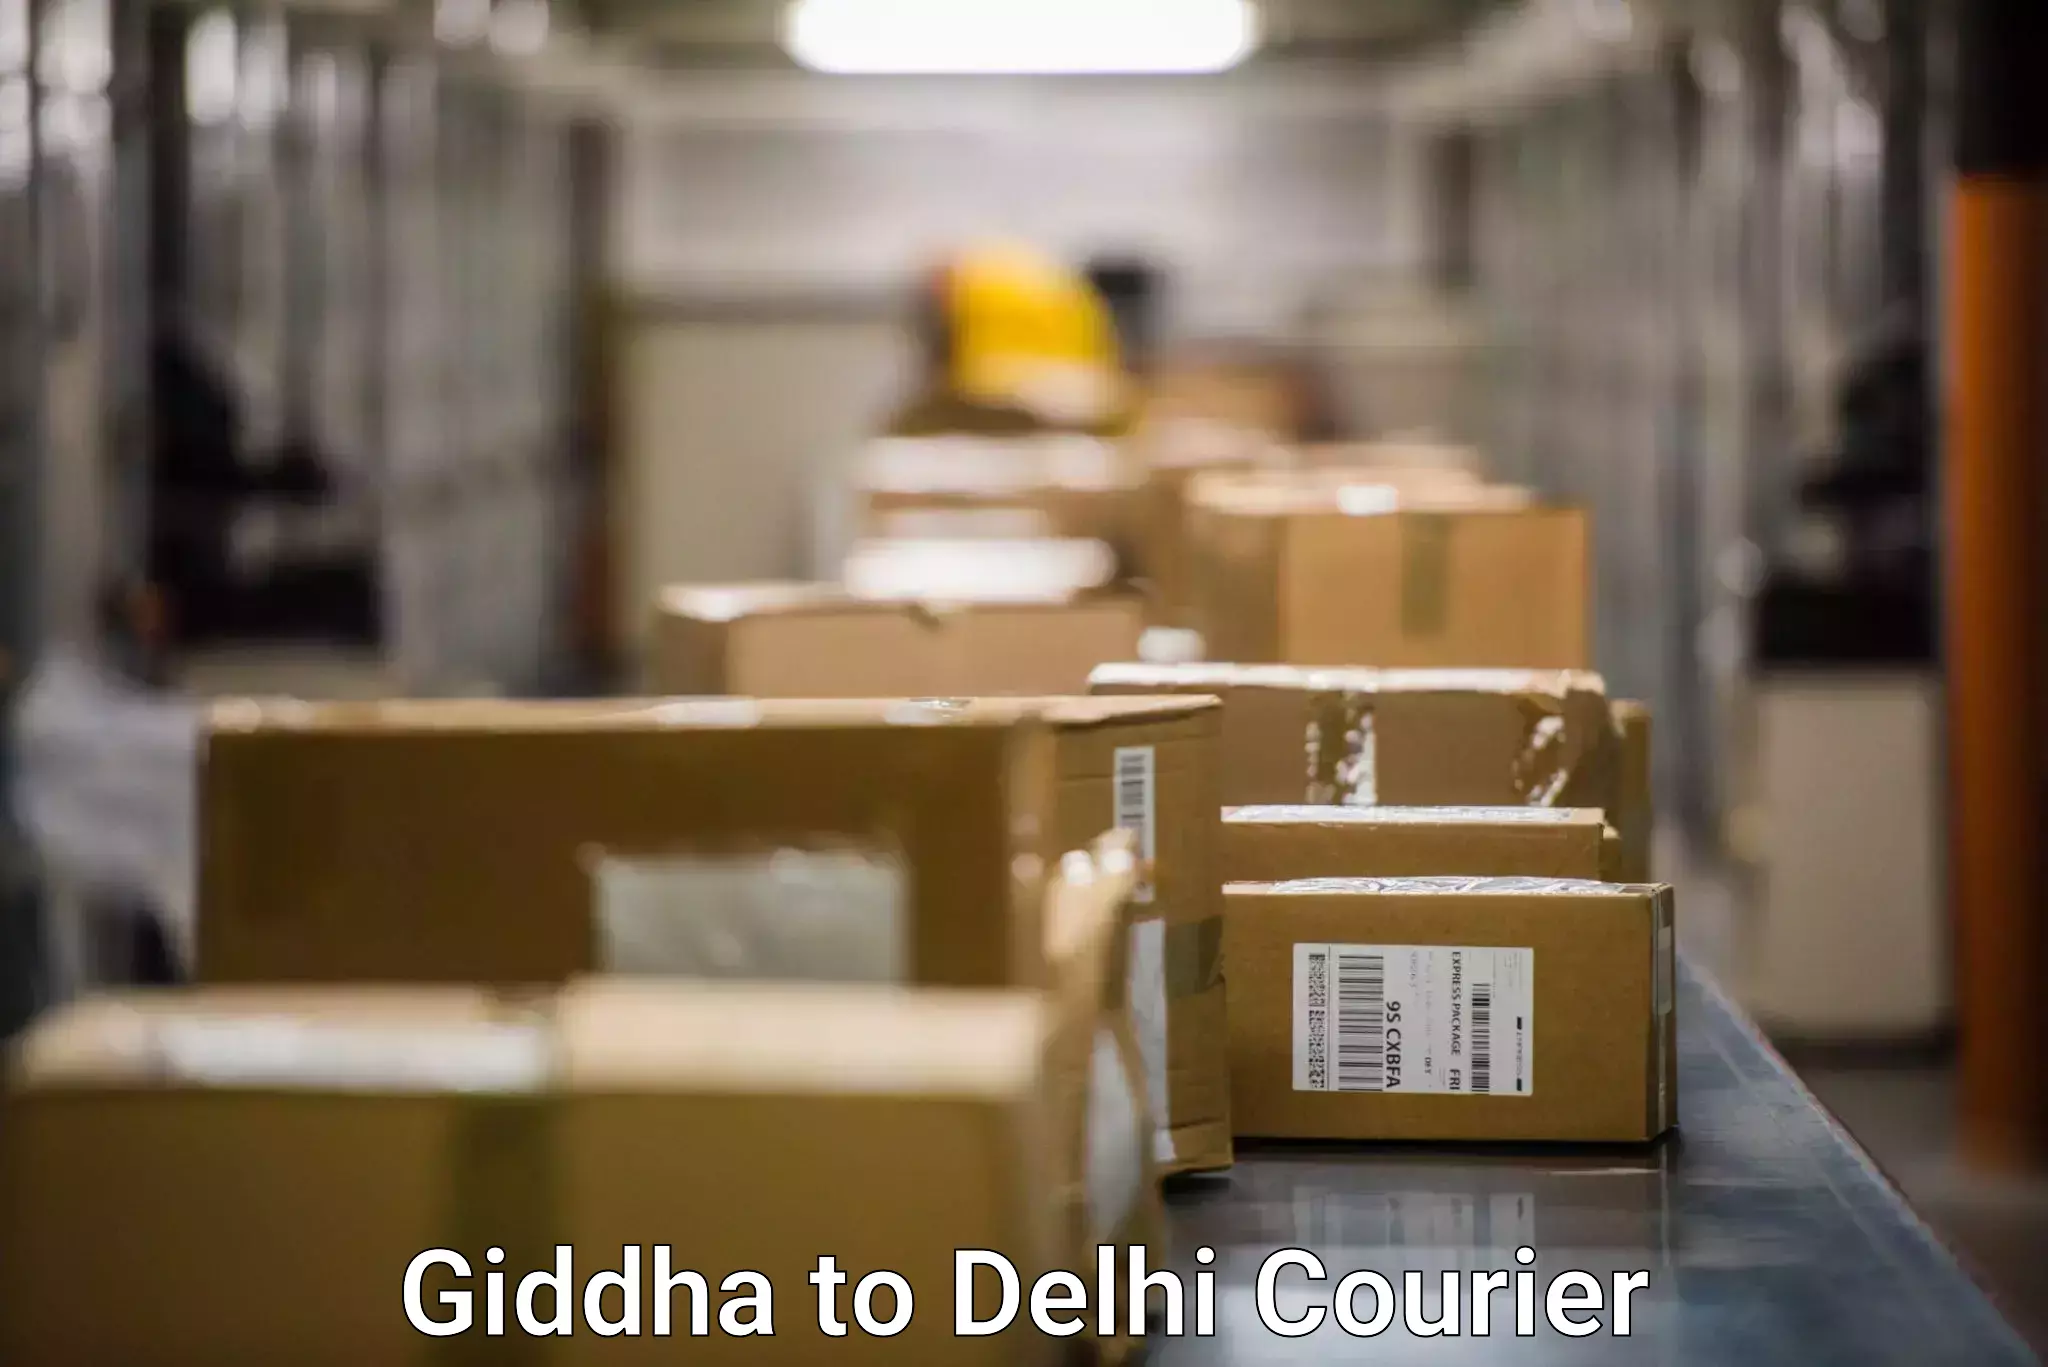 Customized delivery options Giddha to Sarojini Nagar